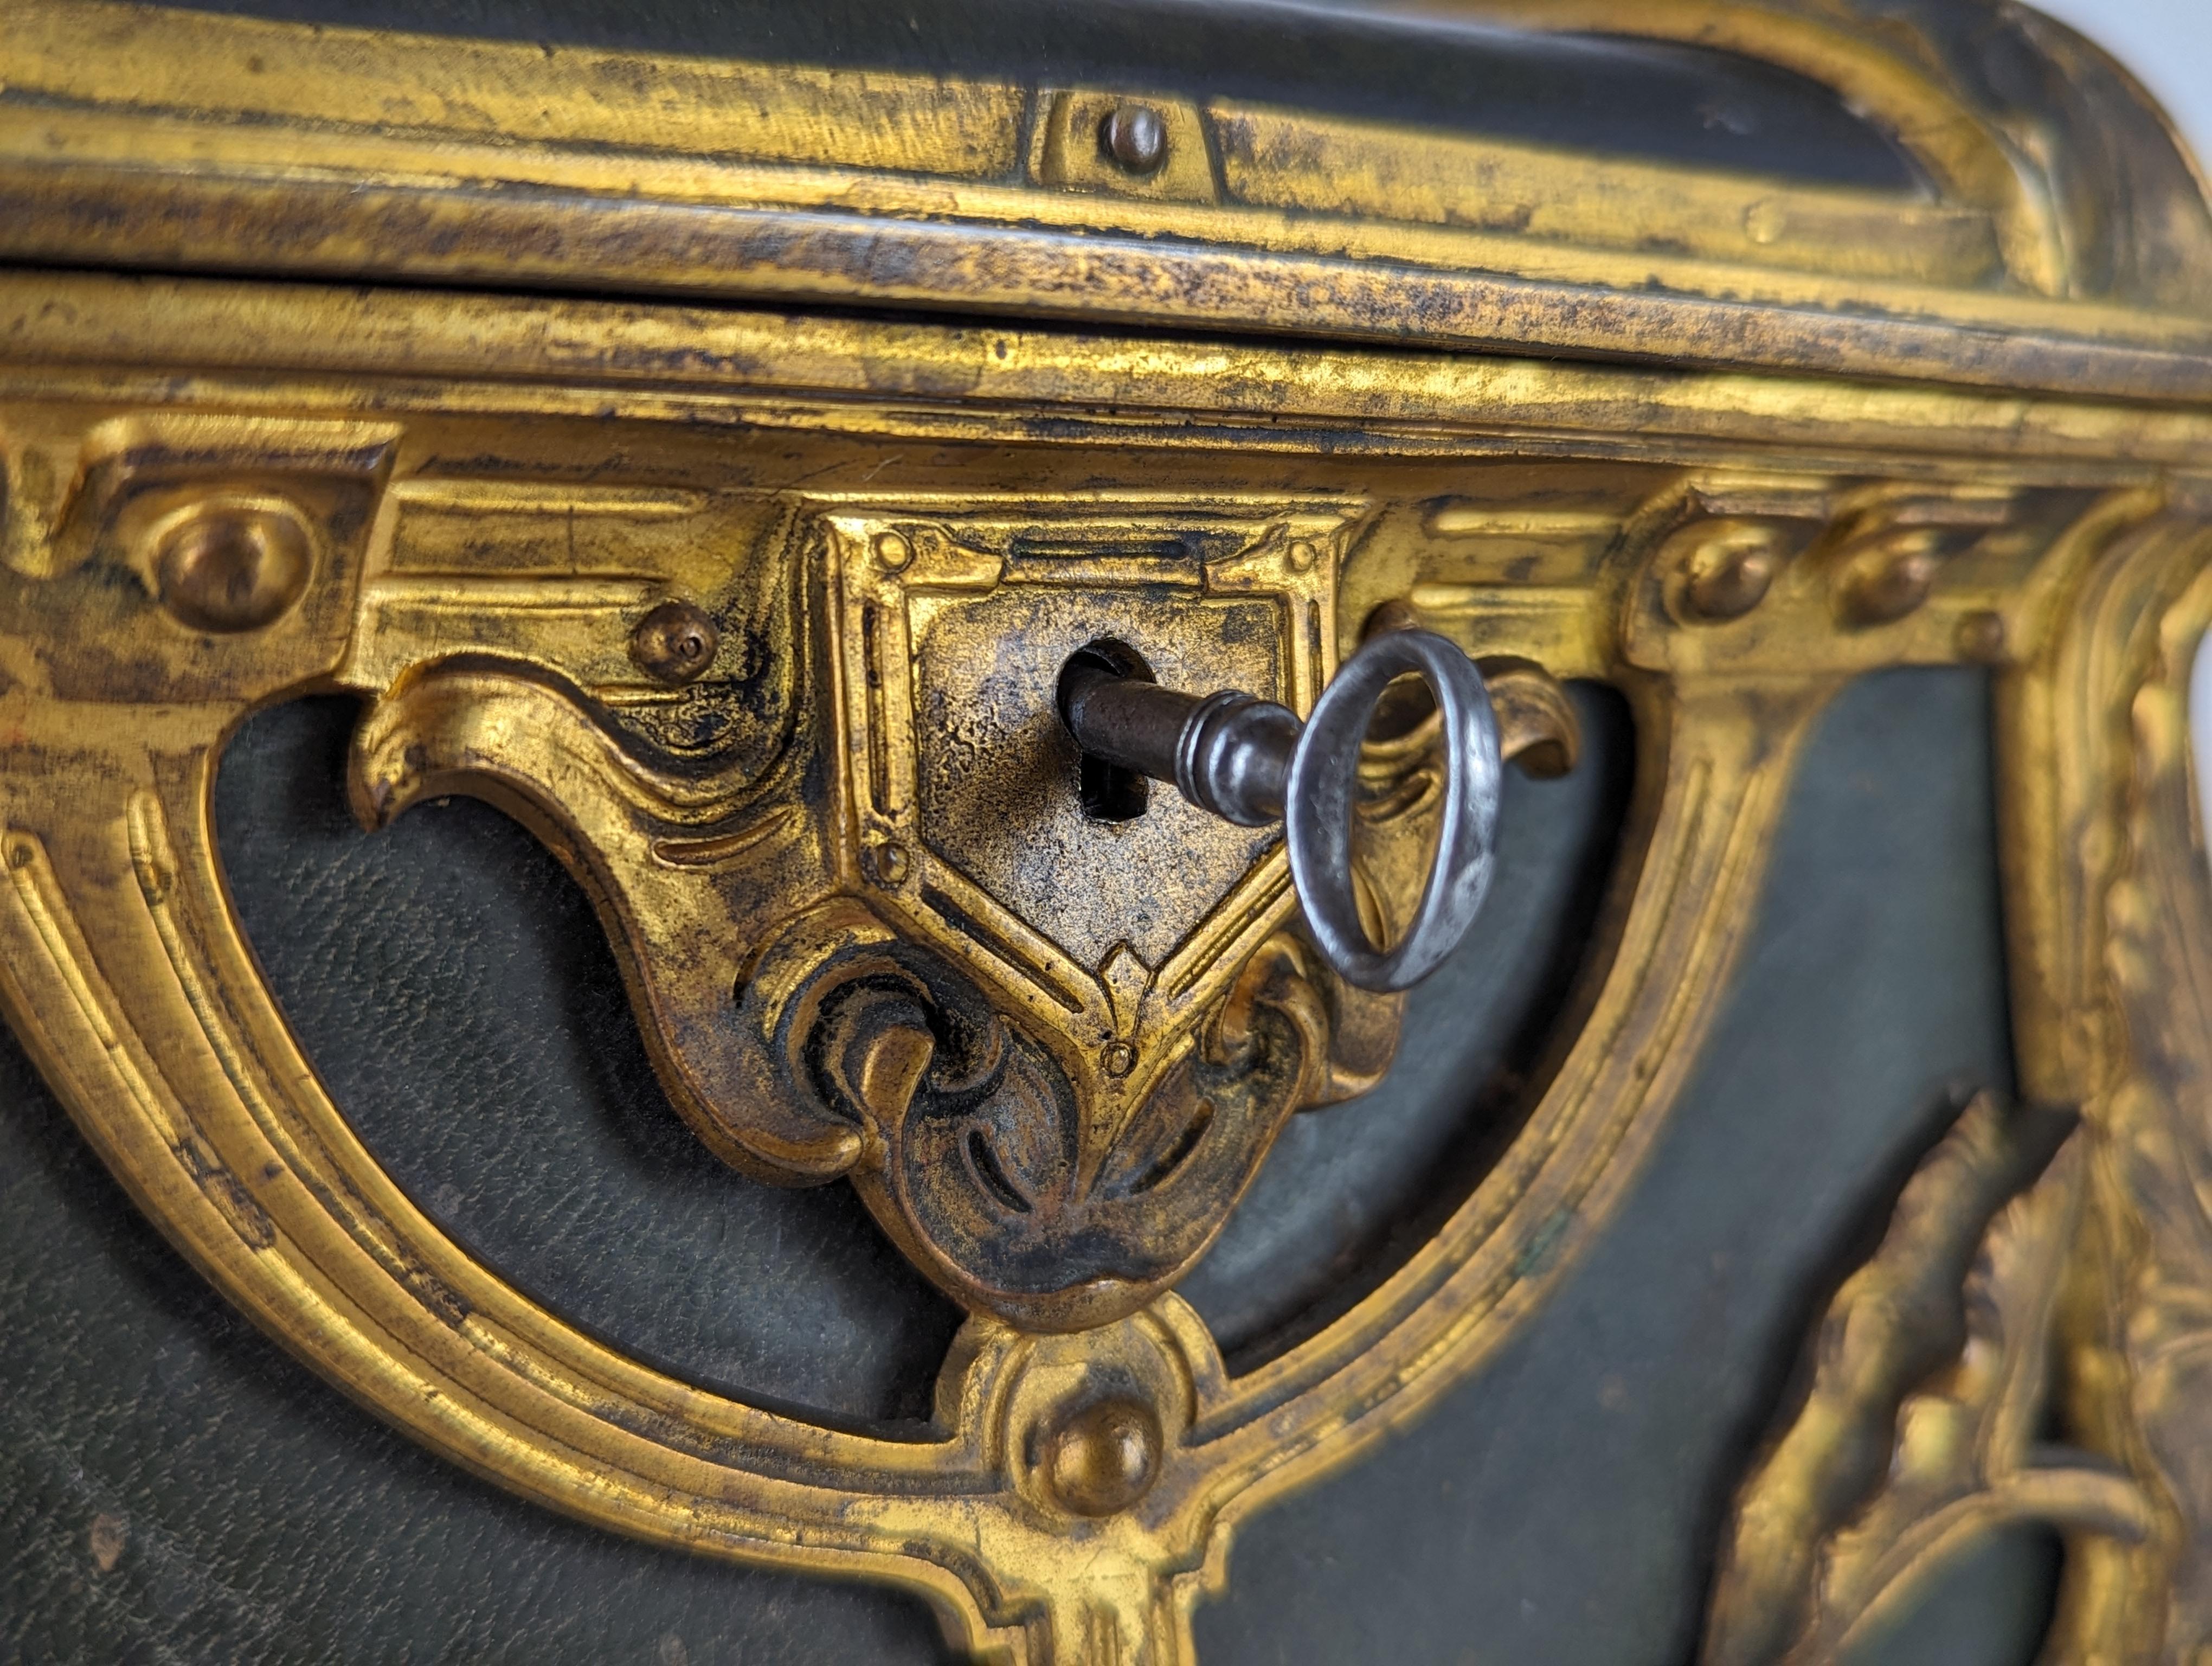 Exceptionnelle boîte à bijoux créée en France à partir de la fin du XIXe siècle, c'est une véritable œuvre d'art de l'époque Art nouveau. Son design bombé, avec des pieds en forme de fleur, présente une étonnante finition en bronze doré qui brille